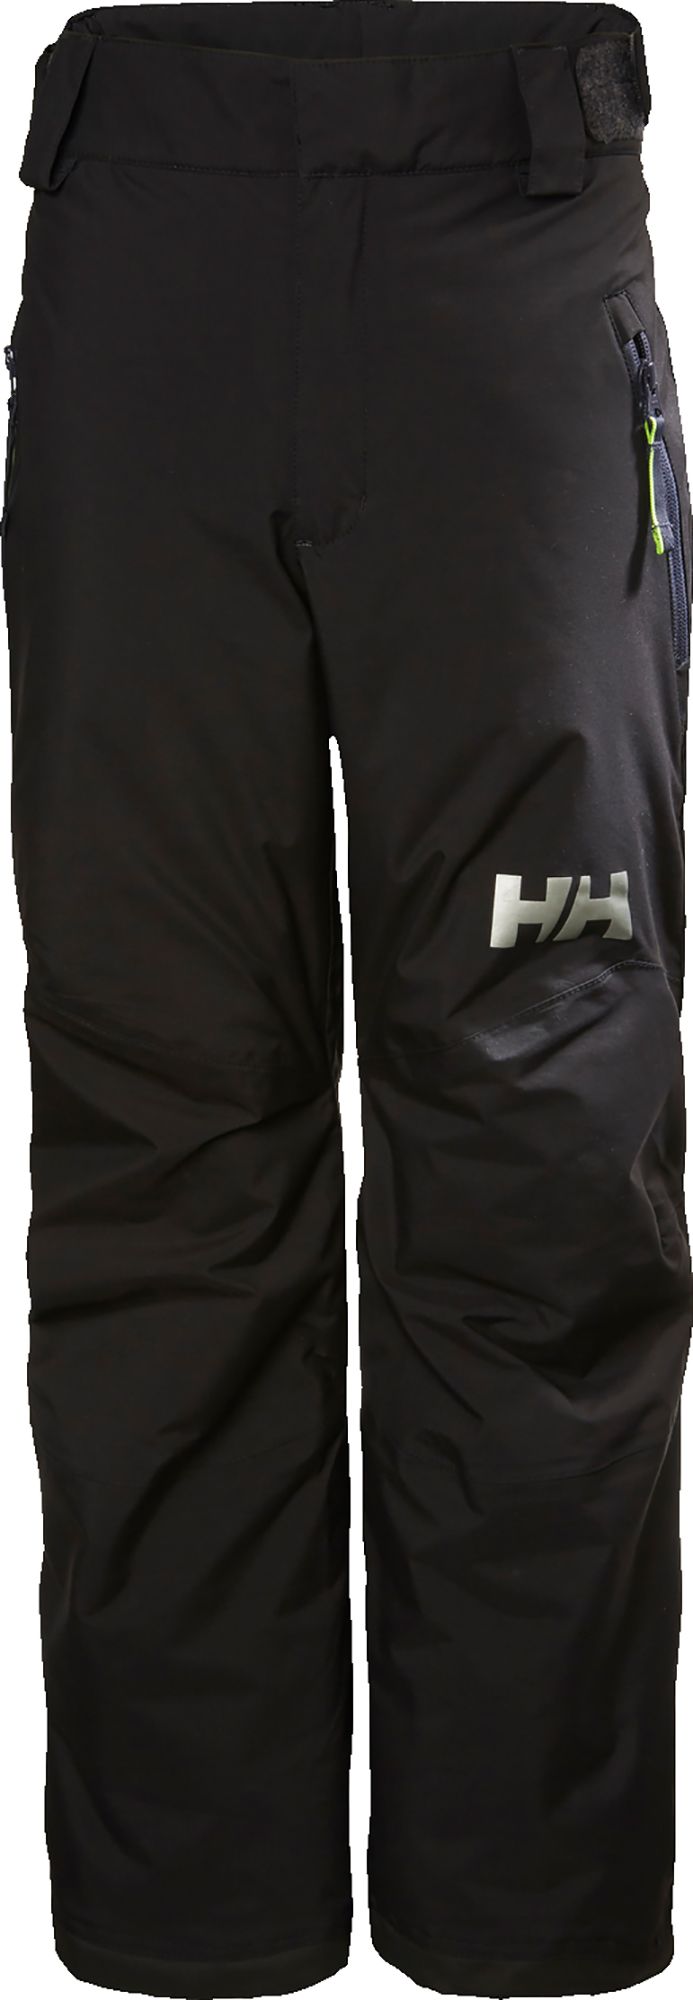 Photos - Ski Wear Helly Hansen Junior's Legendary Pants, Boys', Size 12, Black 21HLYYYLGNDRY 